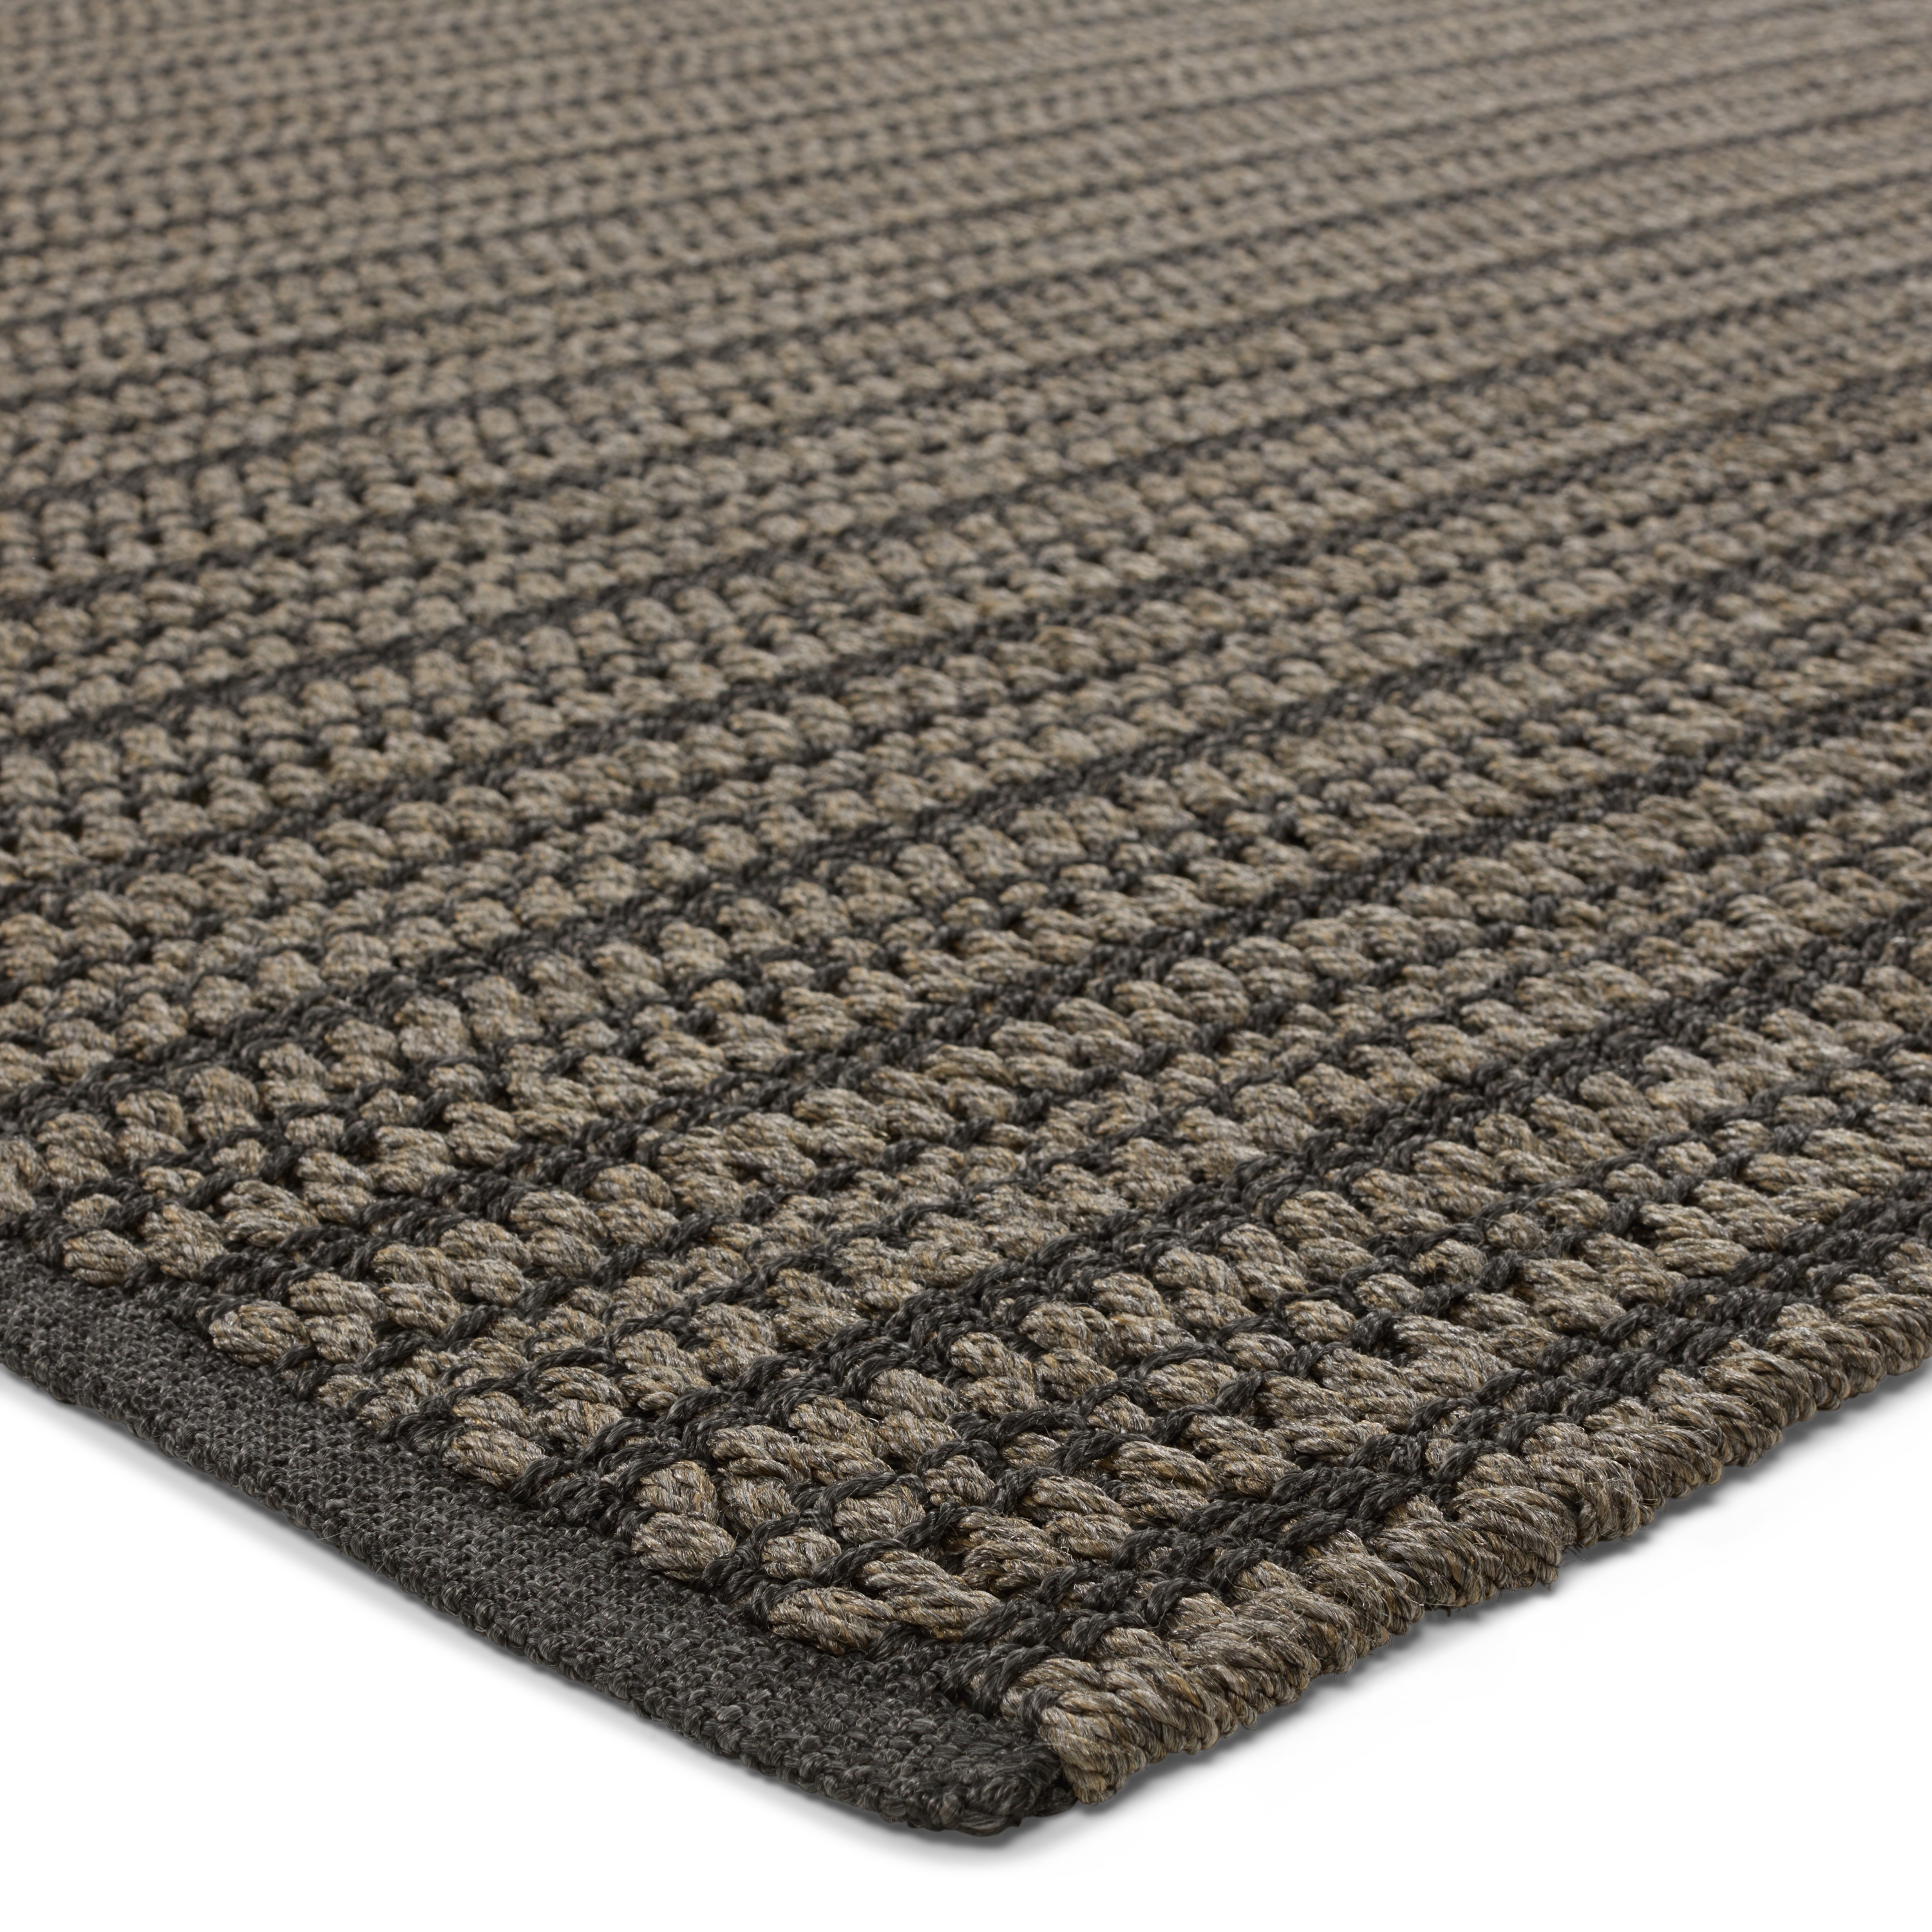 Elmas Handmade Indoor/Outdoor Striped Gray/Charcoal Area Rug (9'X12') - Image 1